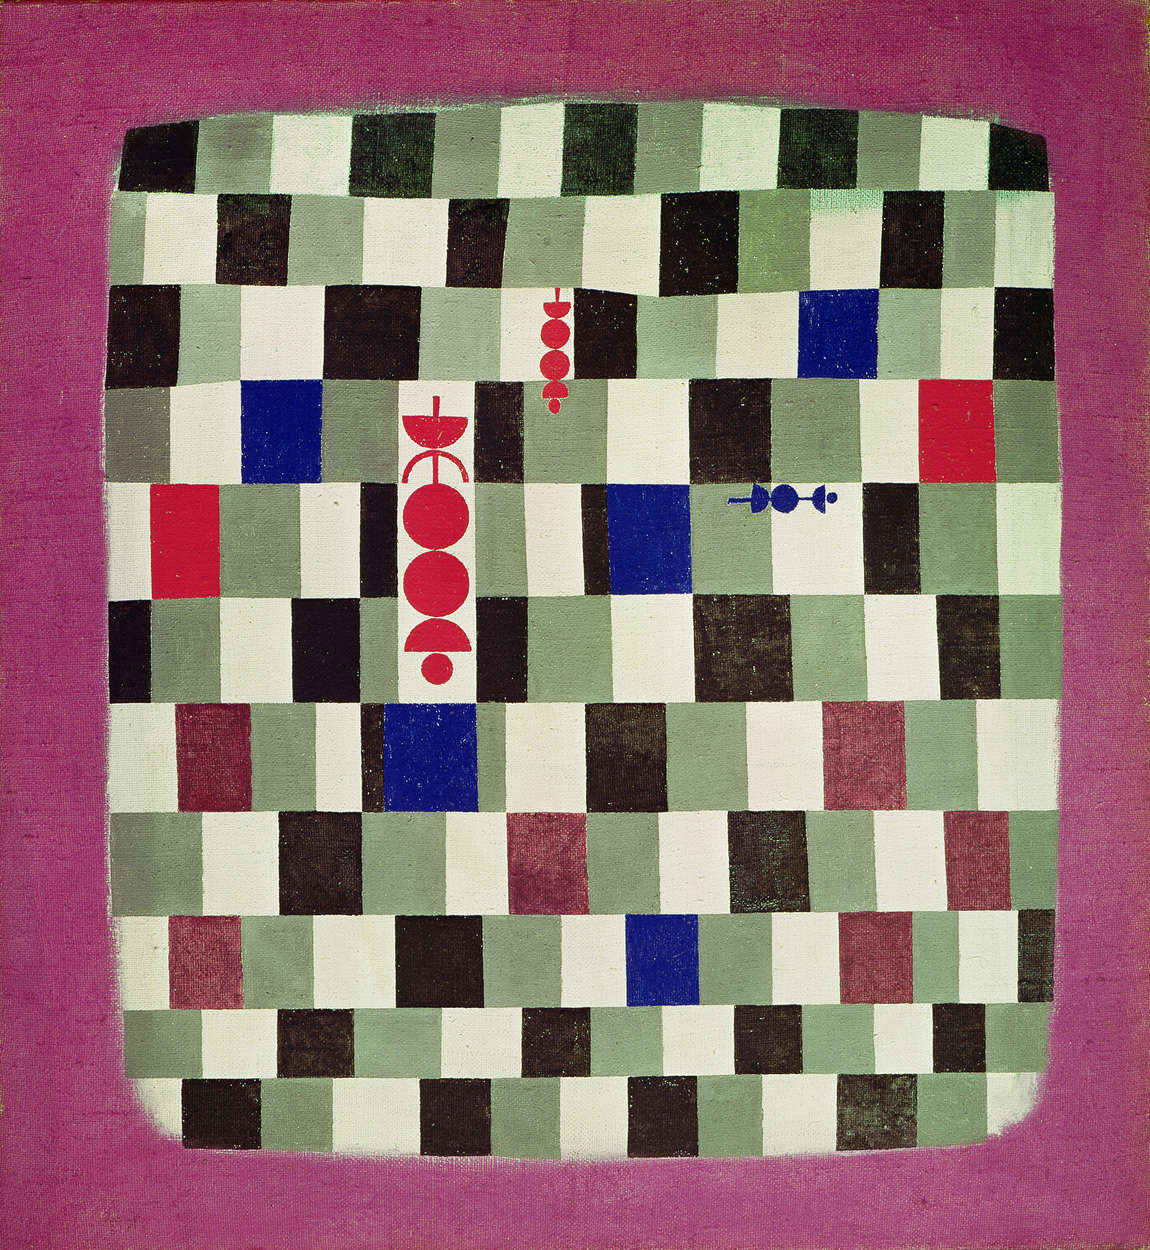             Papel pintado fotográfico "Überschach" de Paul Klee
        